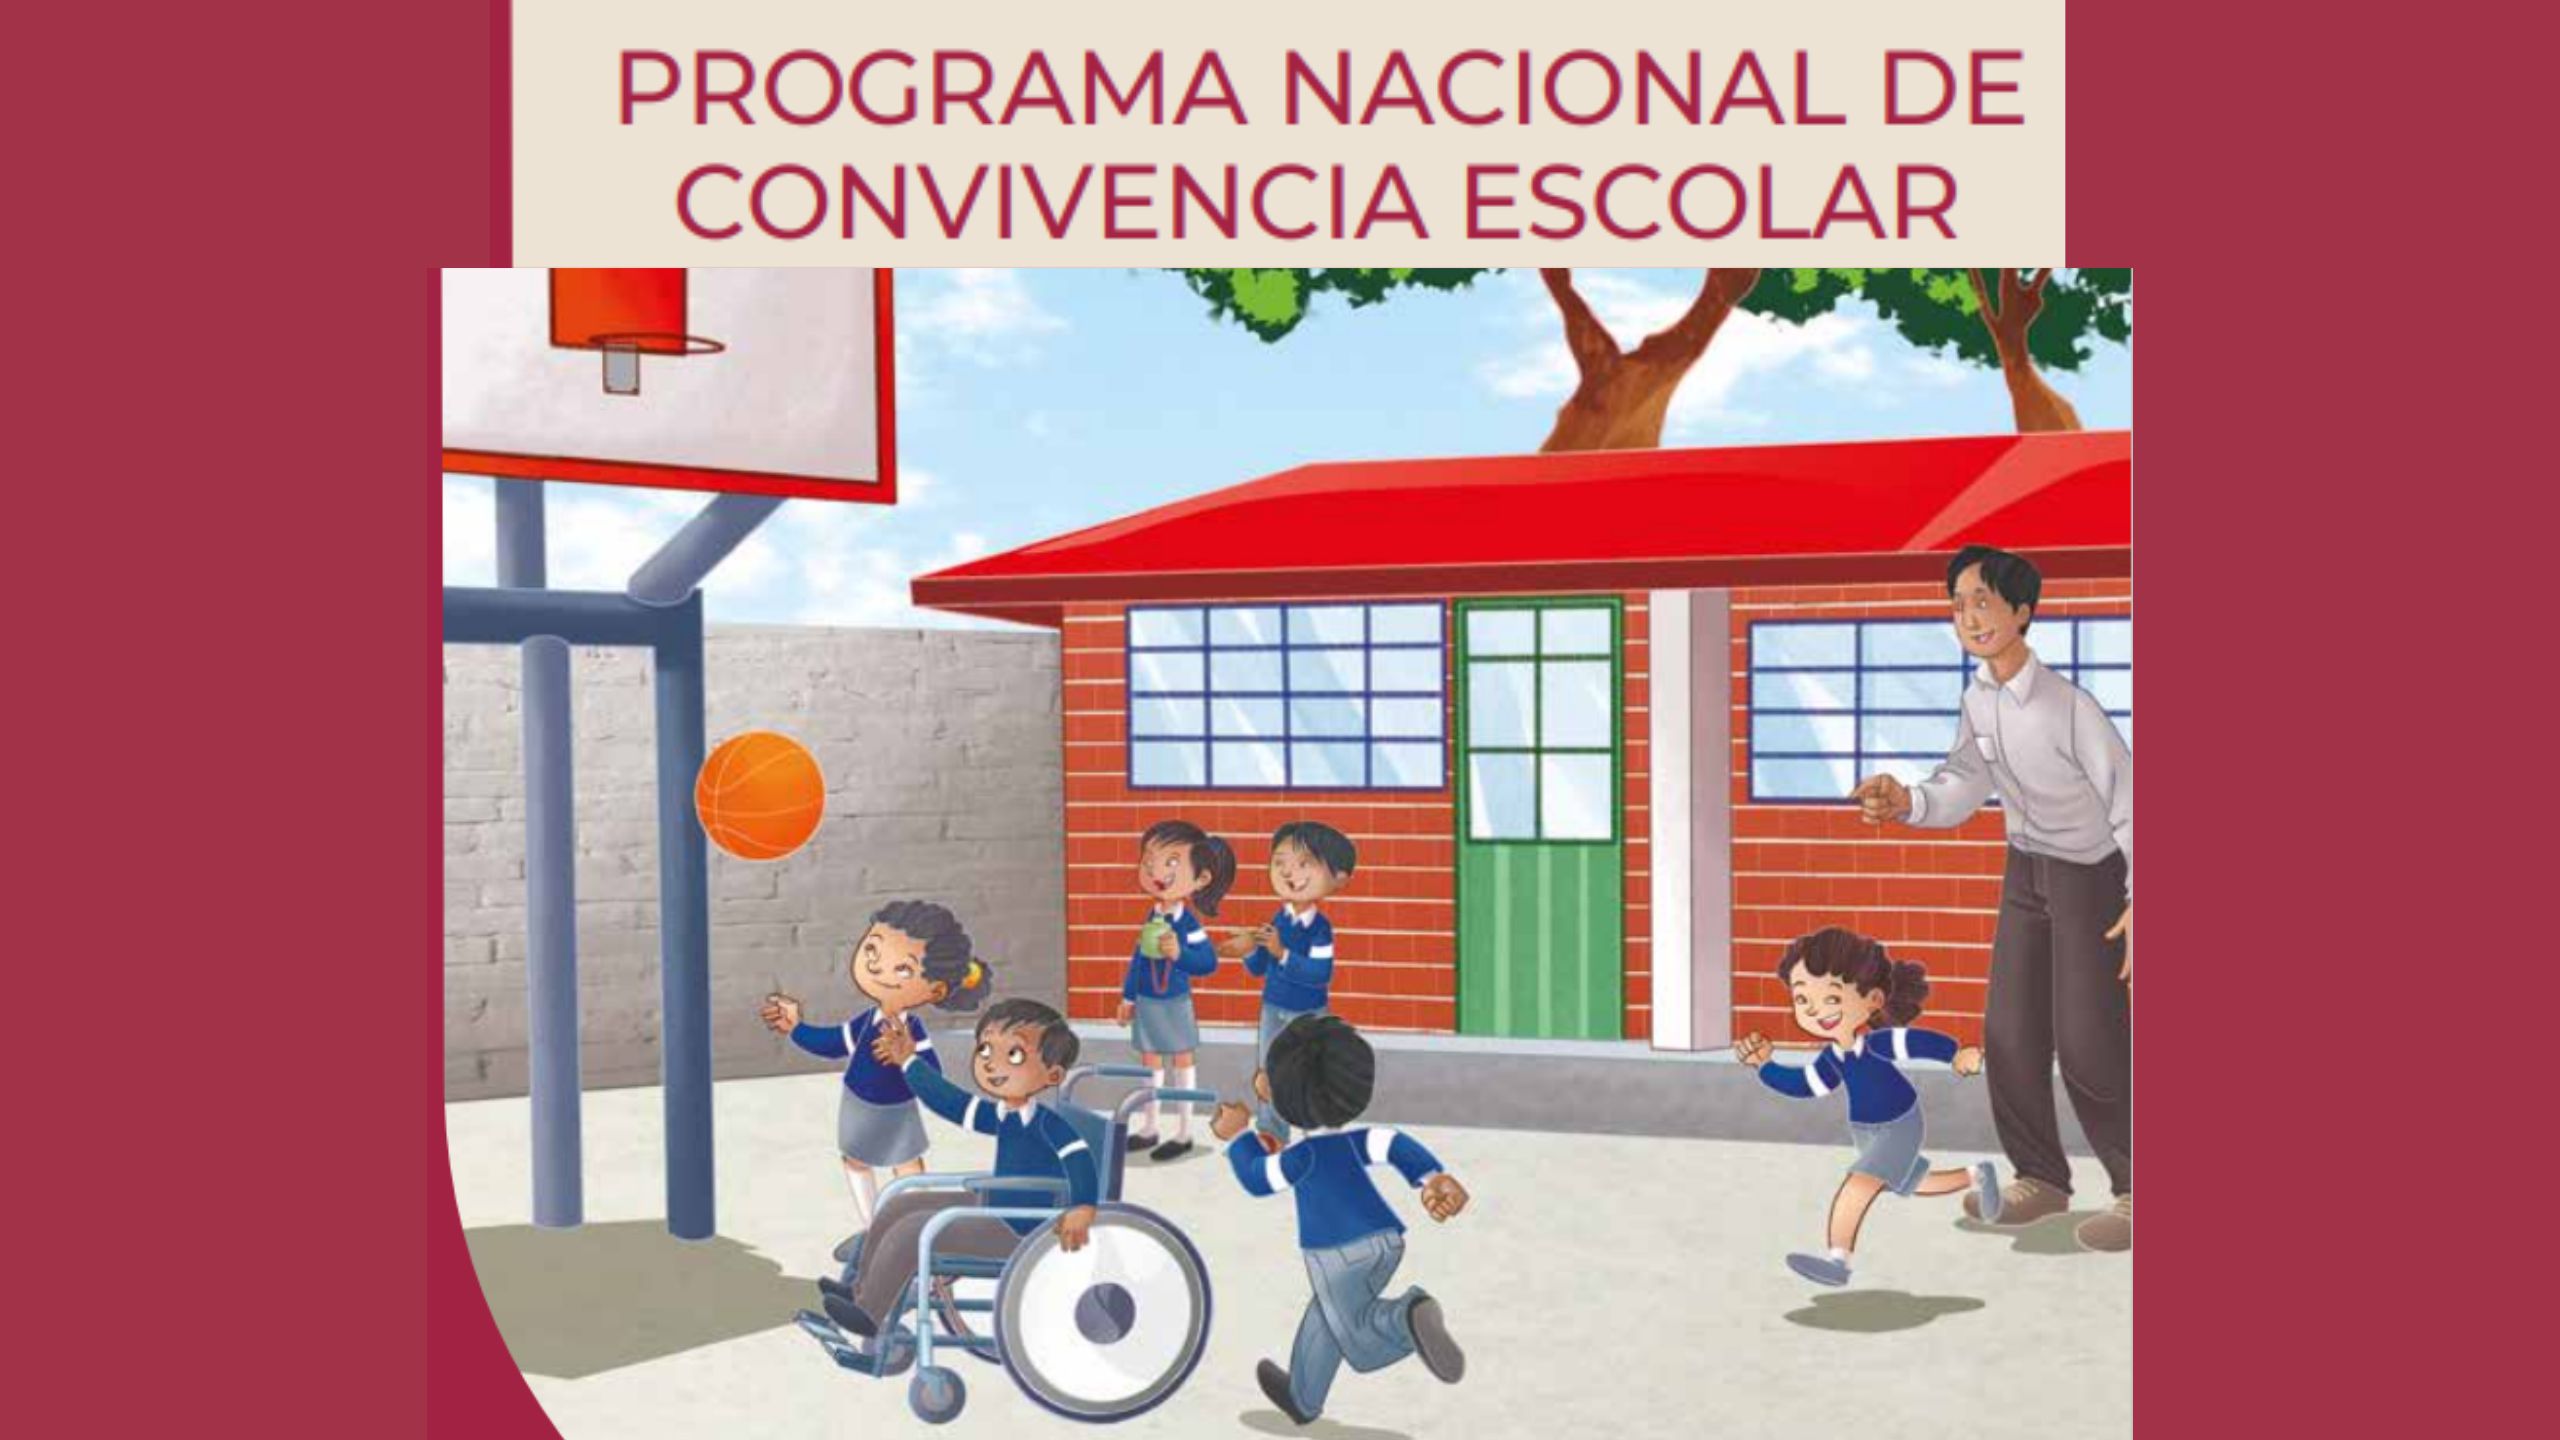 Programa Nacional de Convivencia Escolar | PREESCOLAR, PRIMARIA